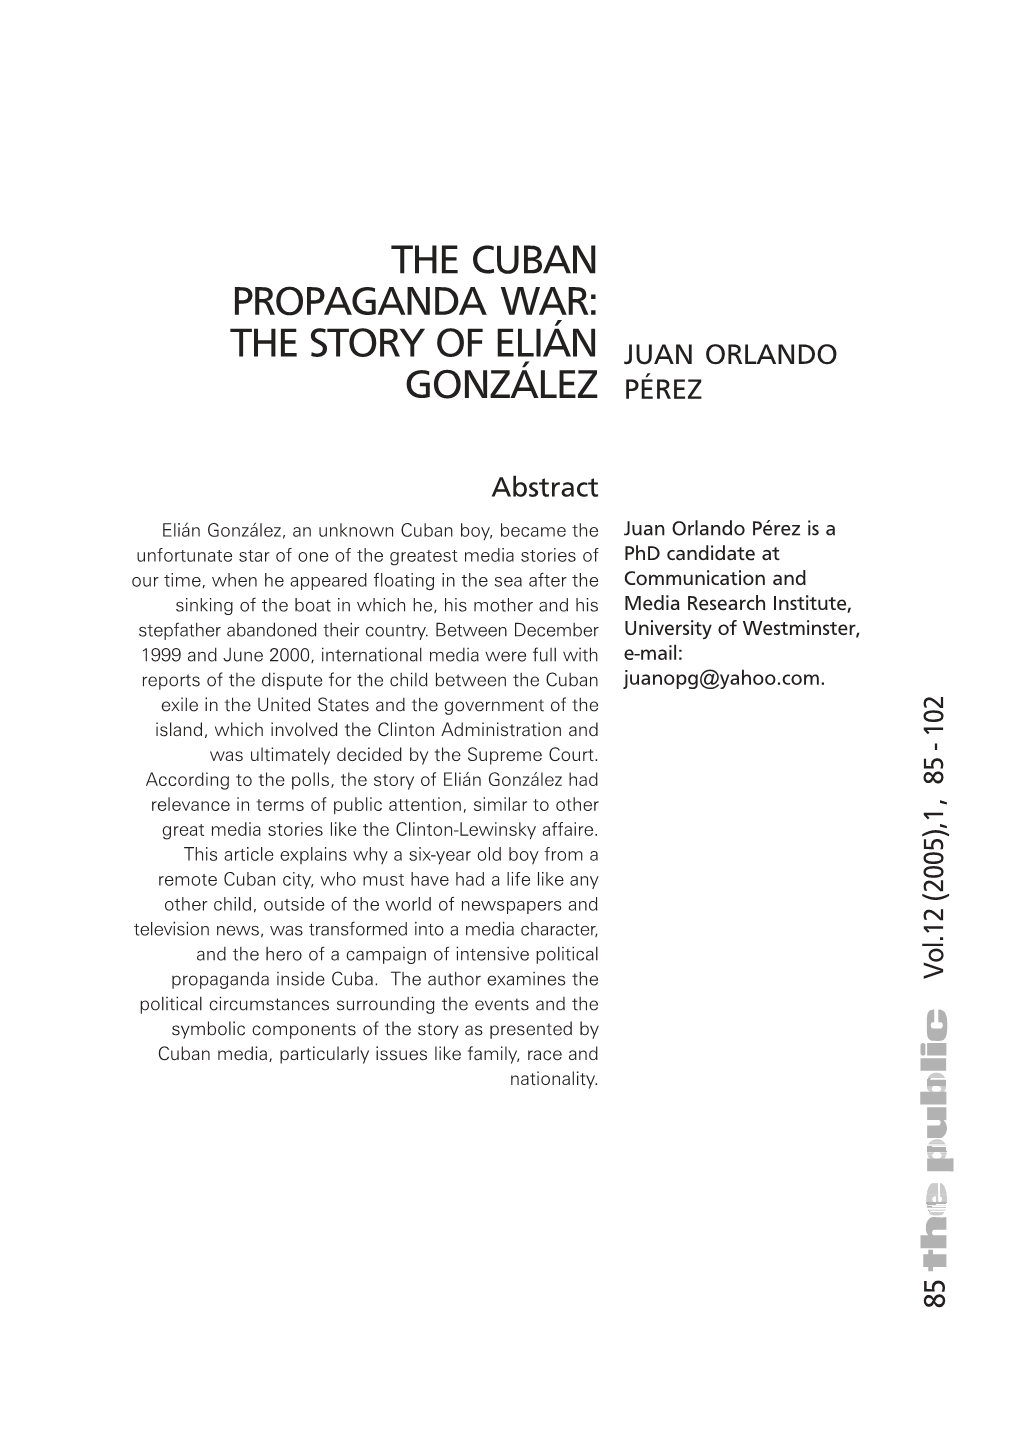 The Cuban Propaganda War: the Story of Elián González